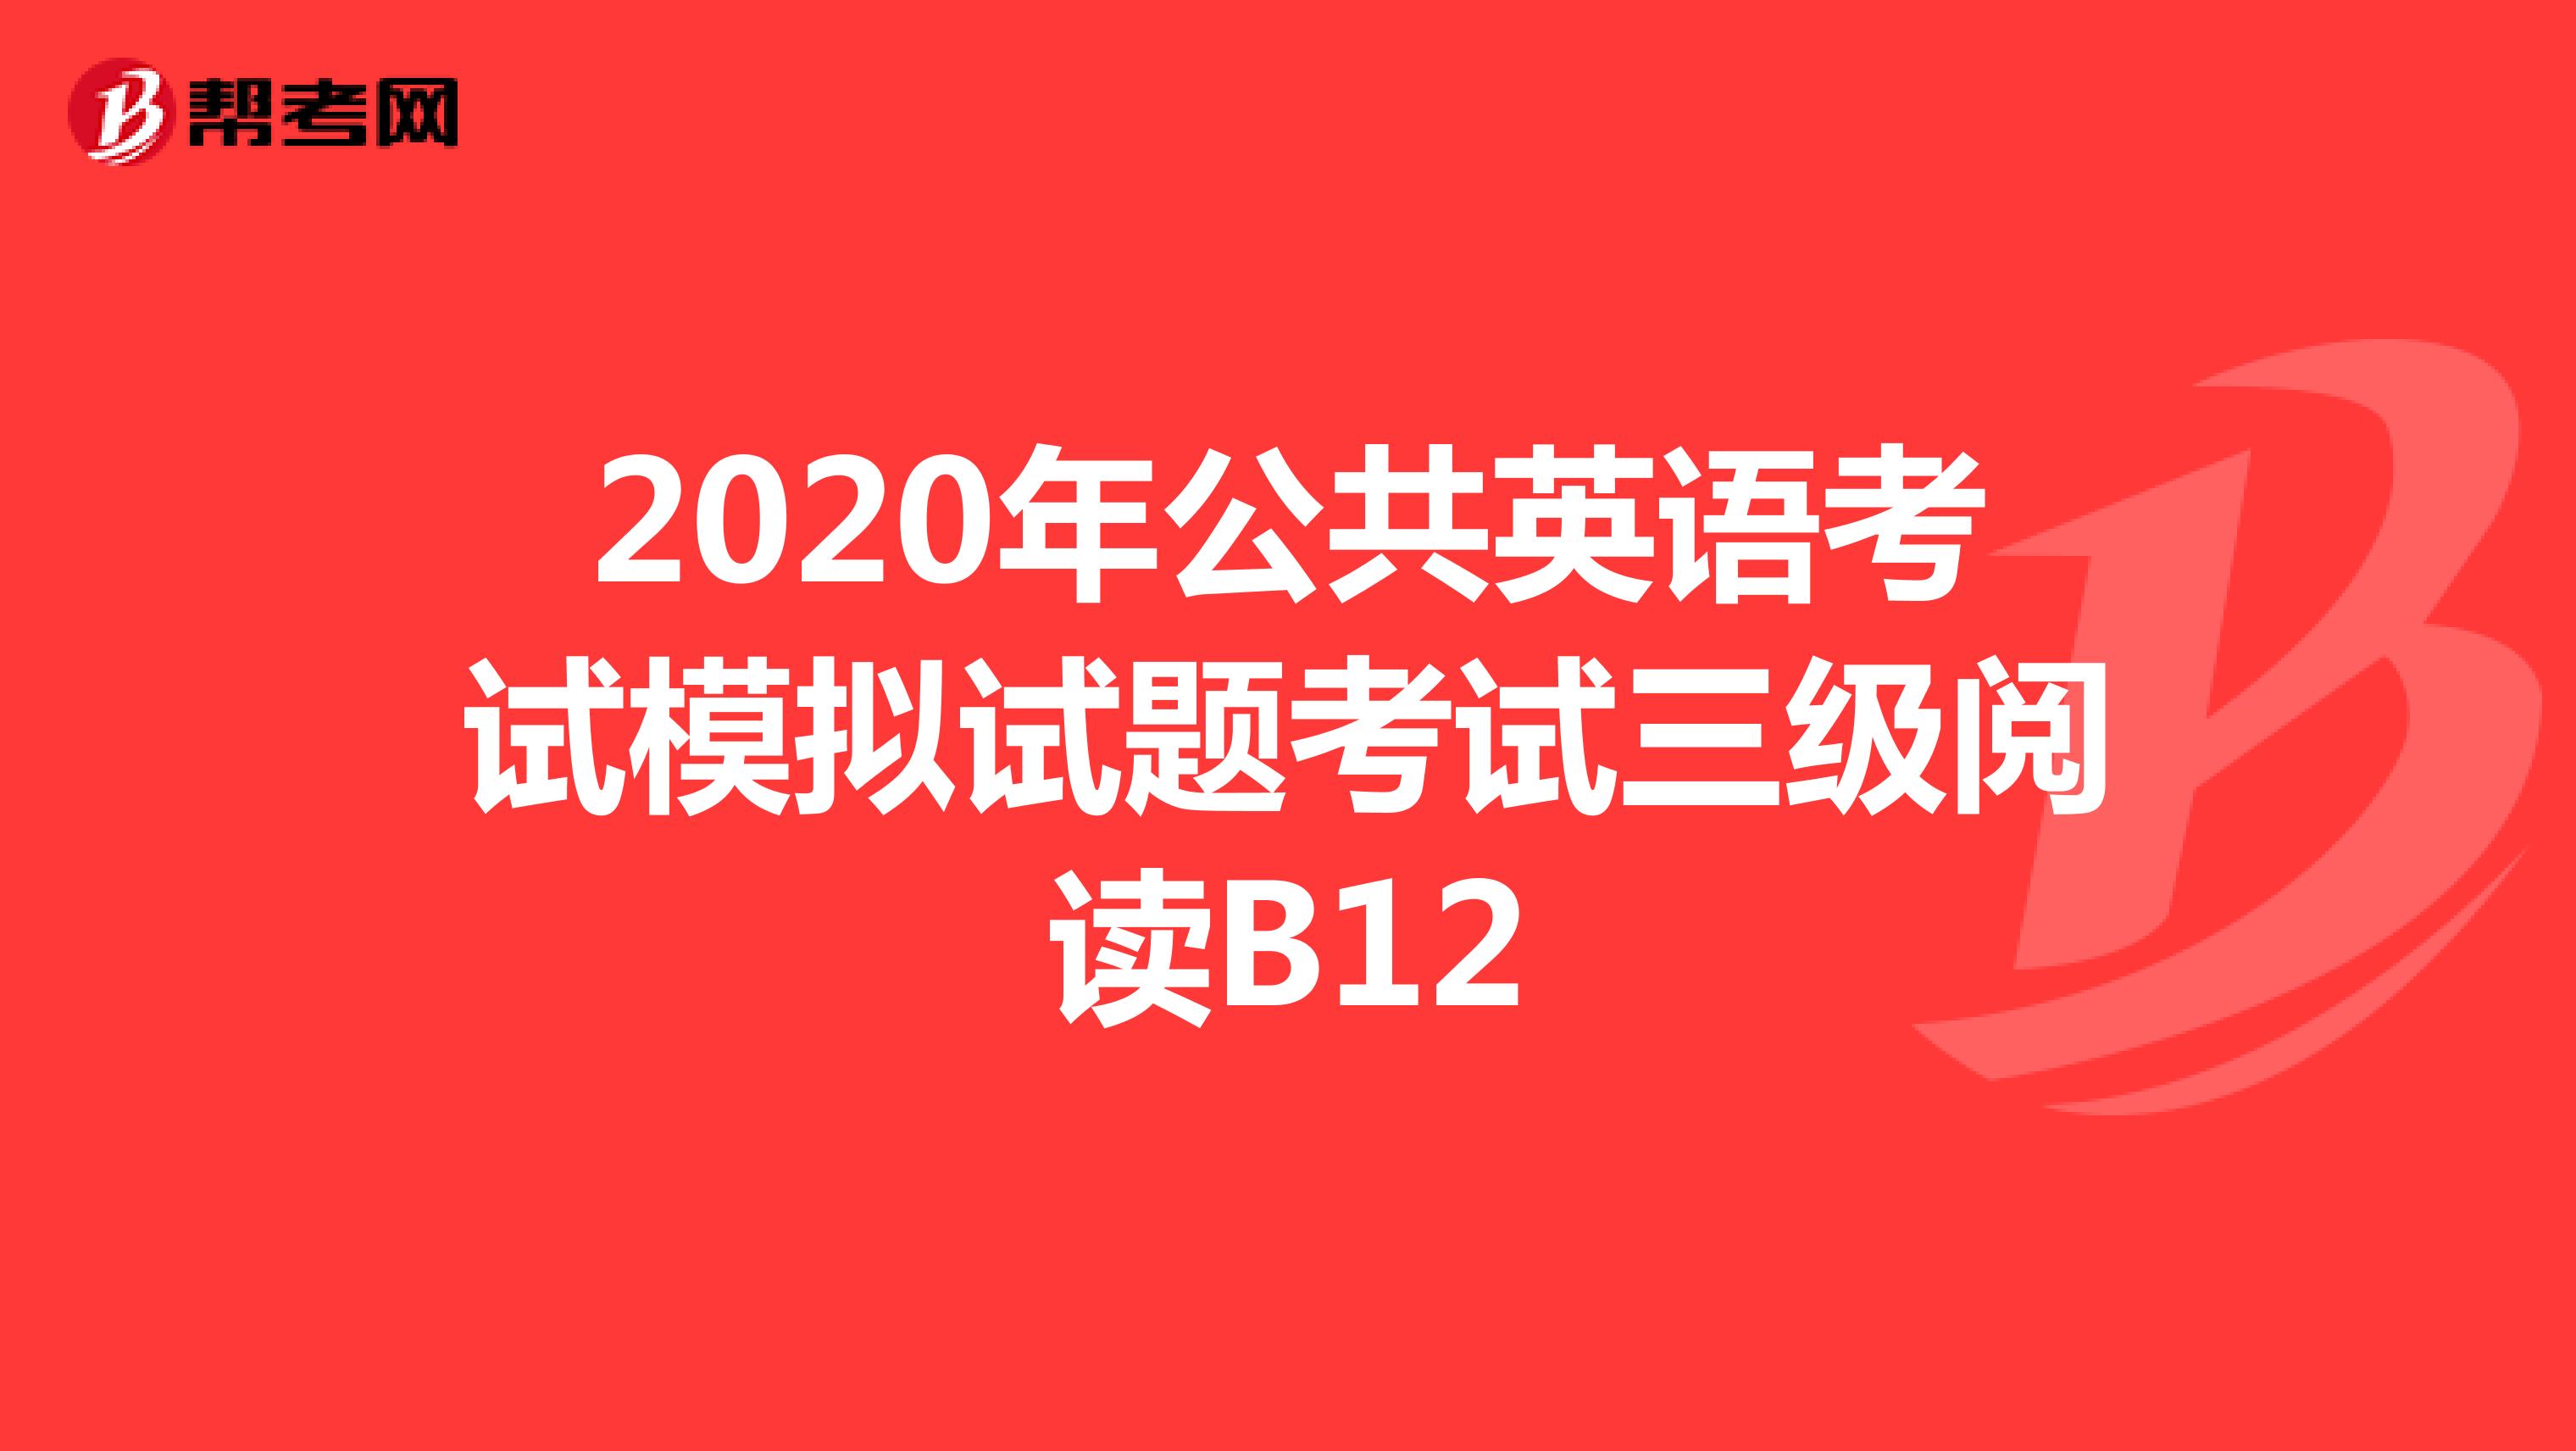 2020年公共英语考试模拟试题考试三级阅读B12